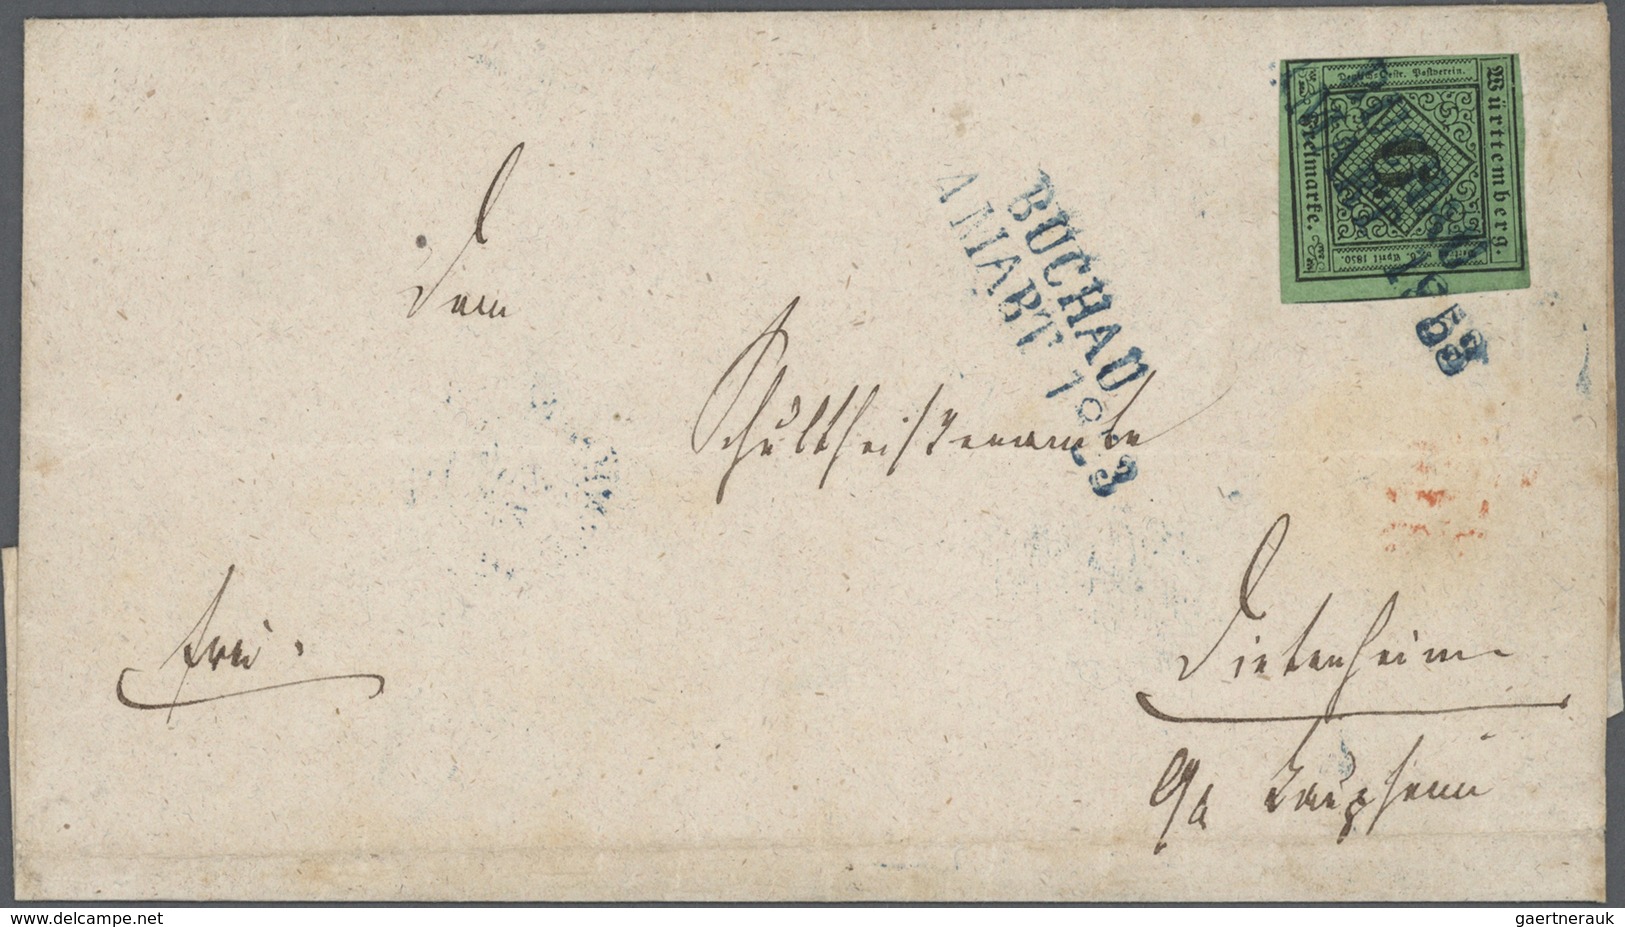 31332 Württemberg - Marken und Briefe: 1850/1874, interessante Sammlung von ca. 400 Belegen der Kreuzerzei